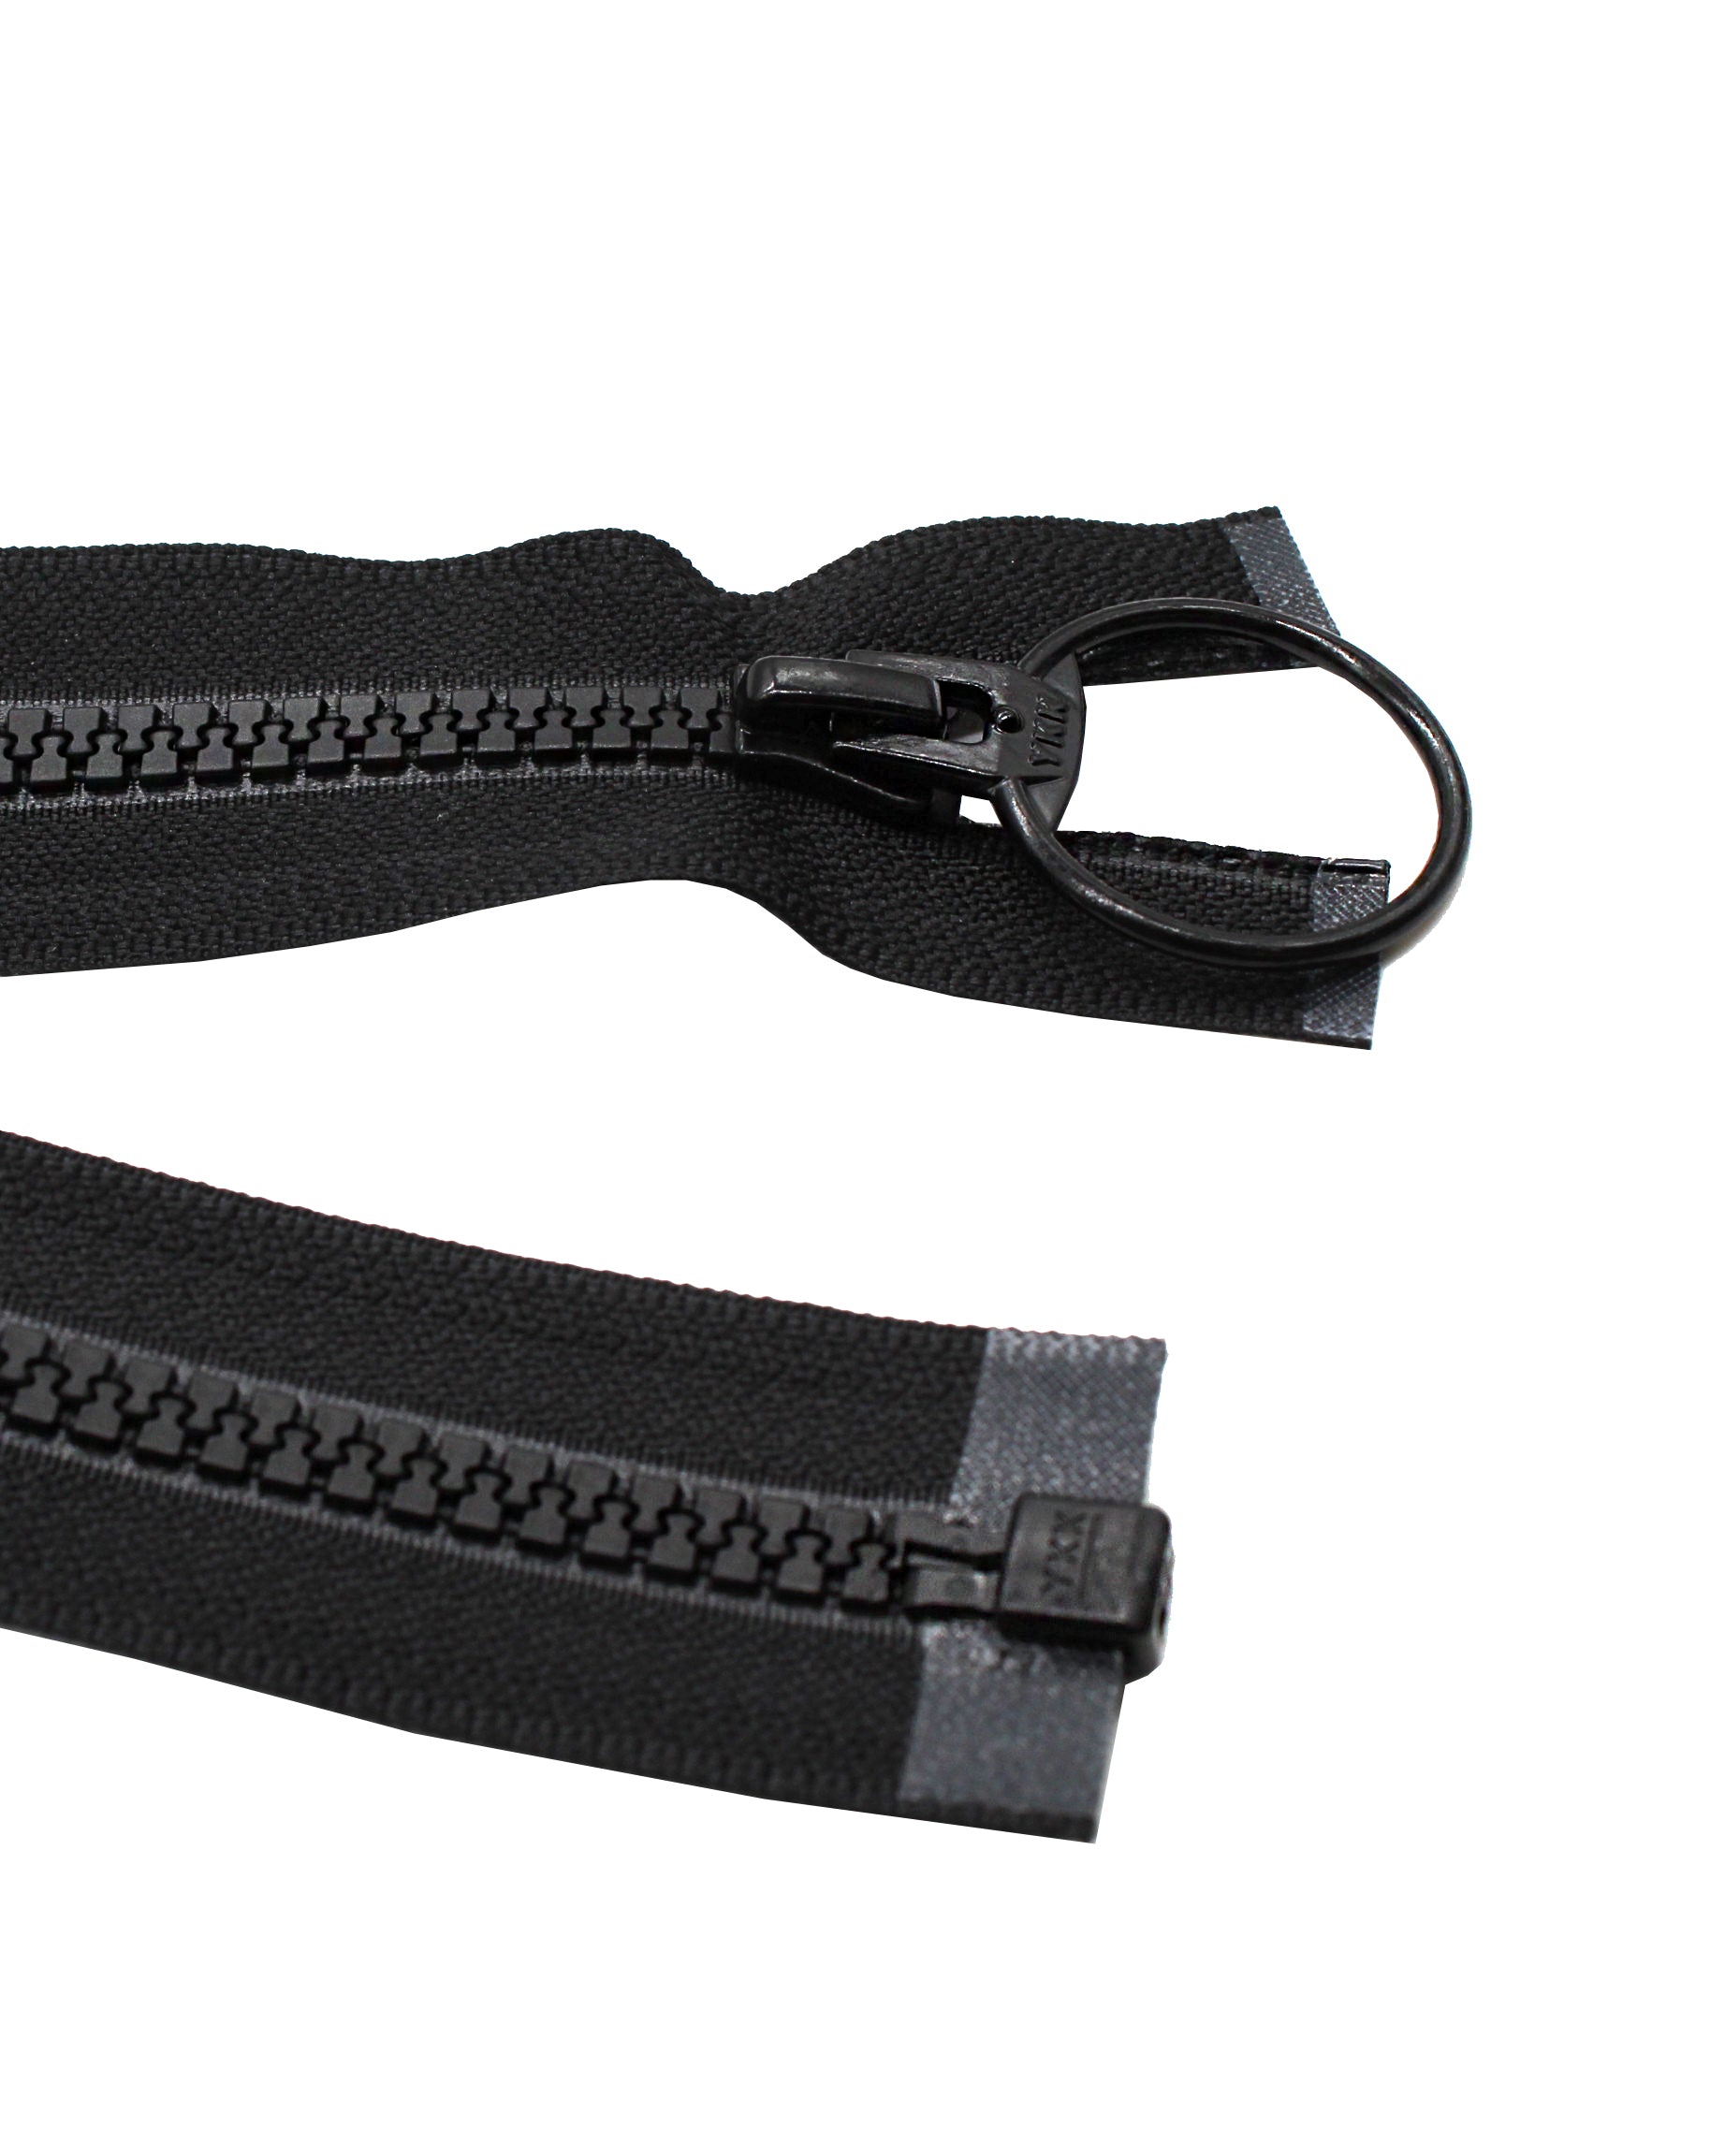 Zipper Repair - Black Plastic